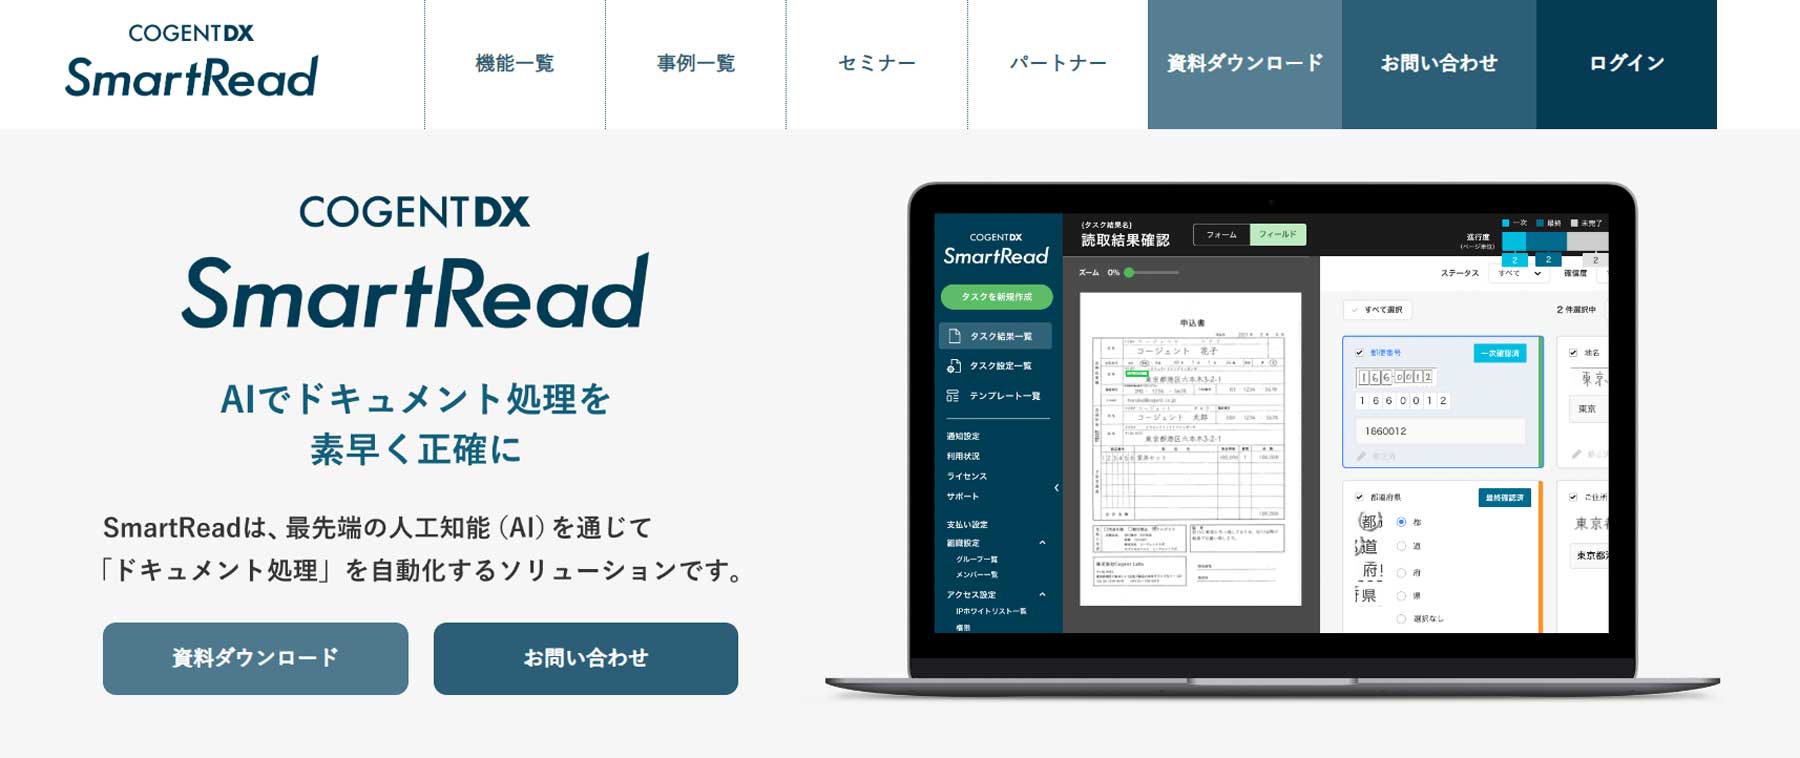 SmartRead 公式Webサイト